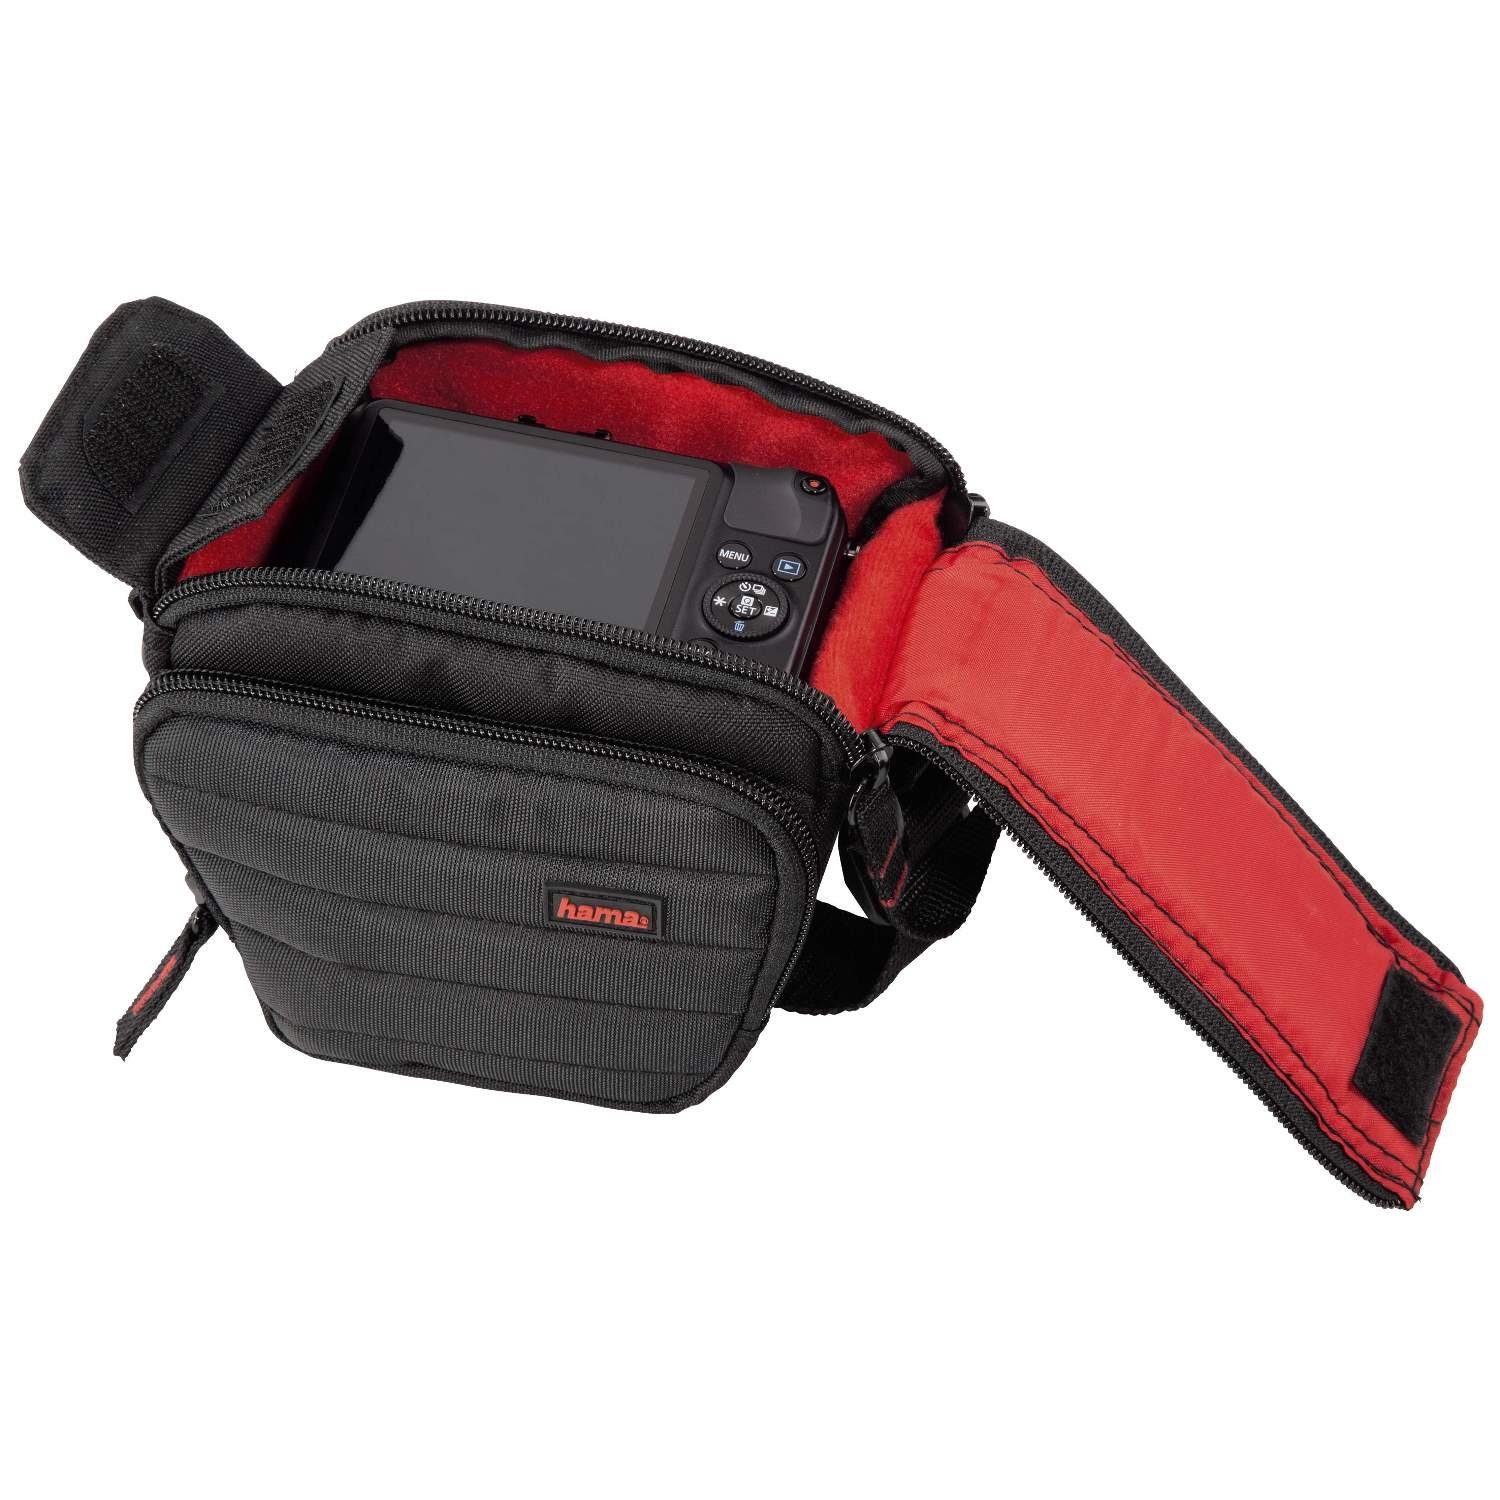 Damen Alle Damentaschen Hama Kameratasche Kamera-Tasche Colt Universal Case Hülle, Passend für Systemkamera Bridge-Kamera, Innen